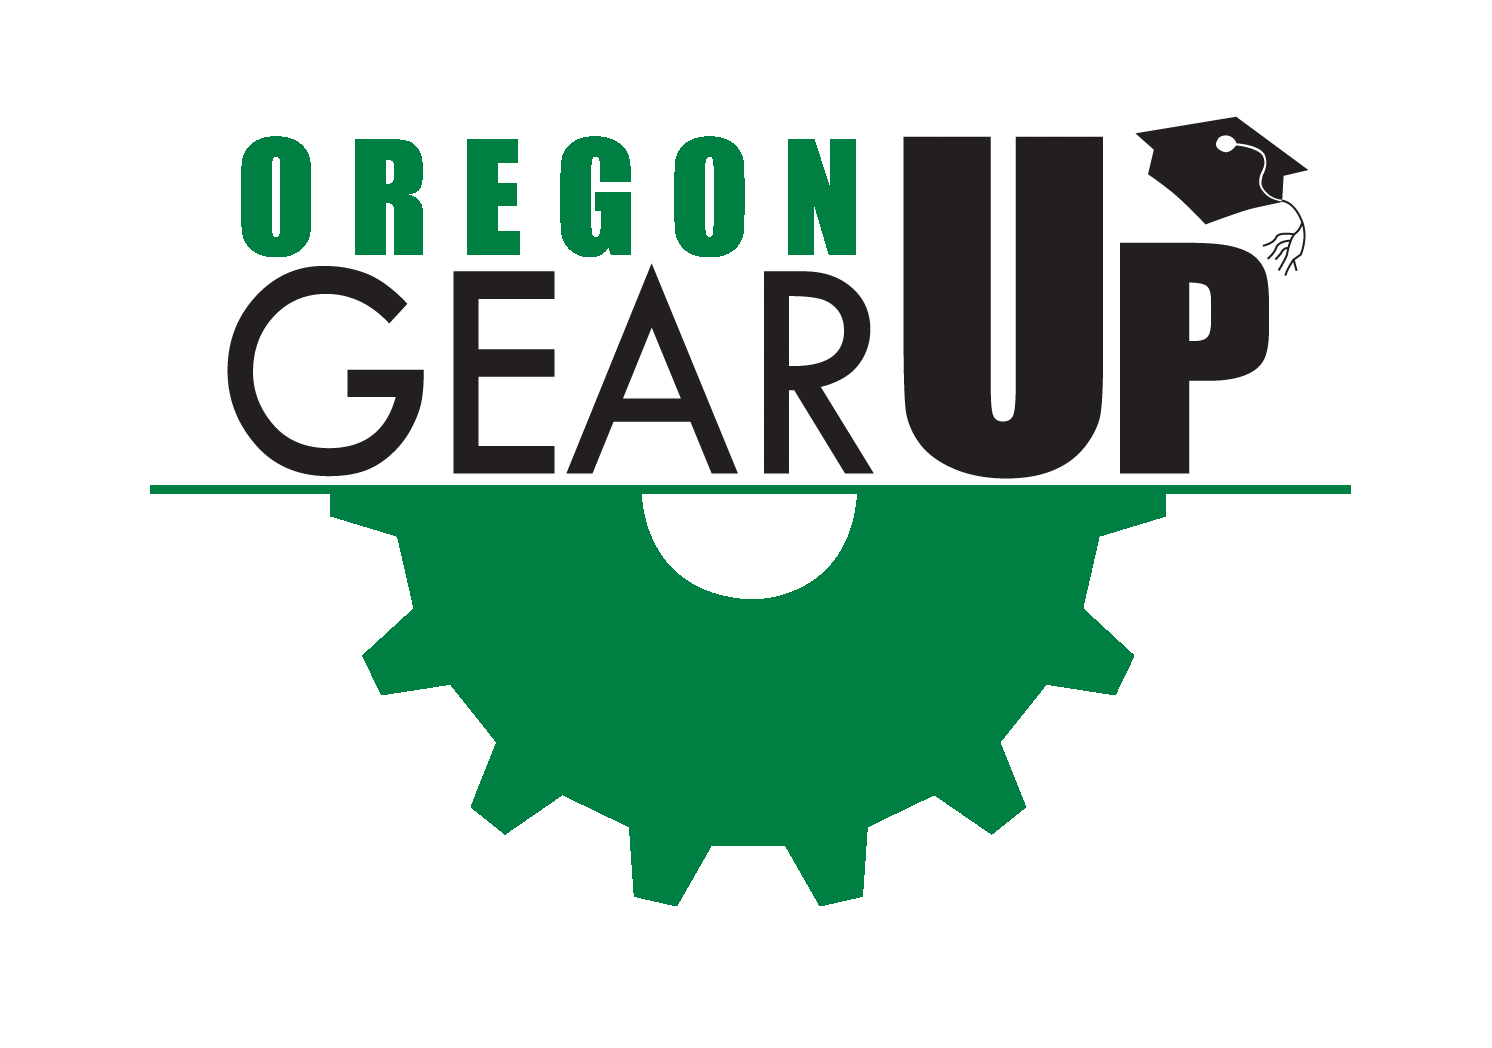 Oregon GEAR UP logo